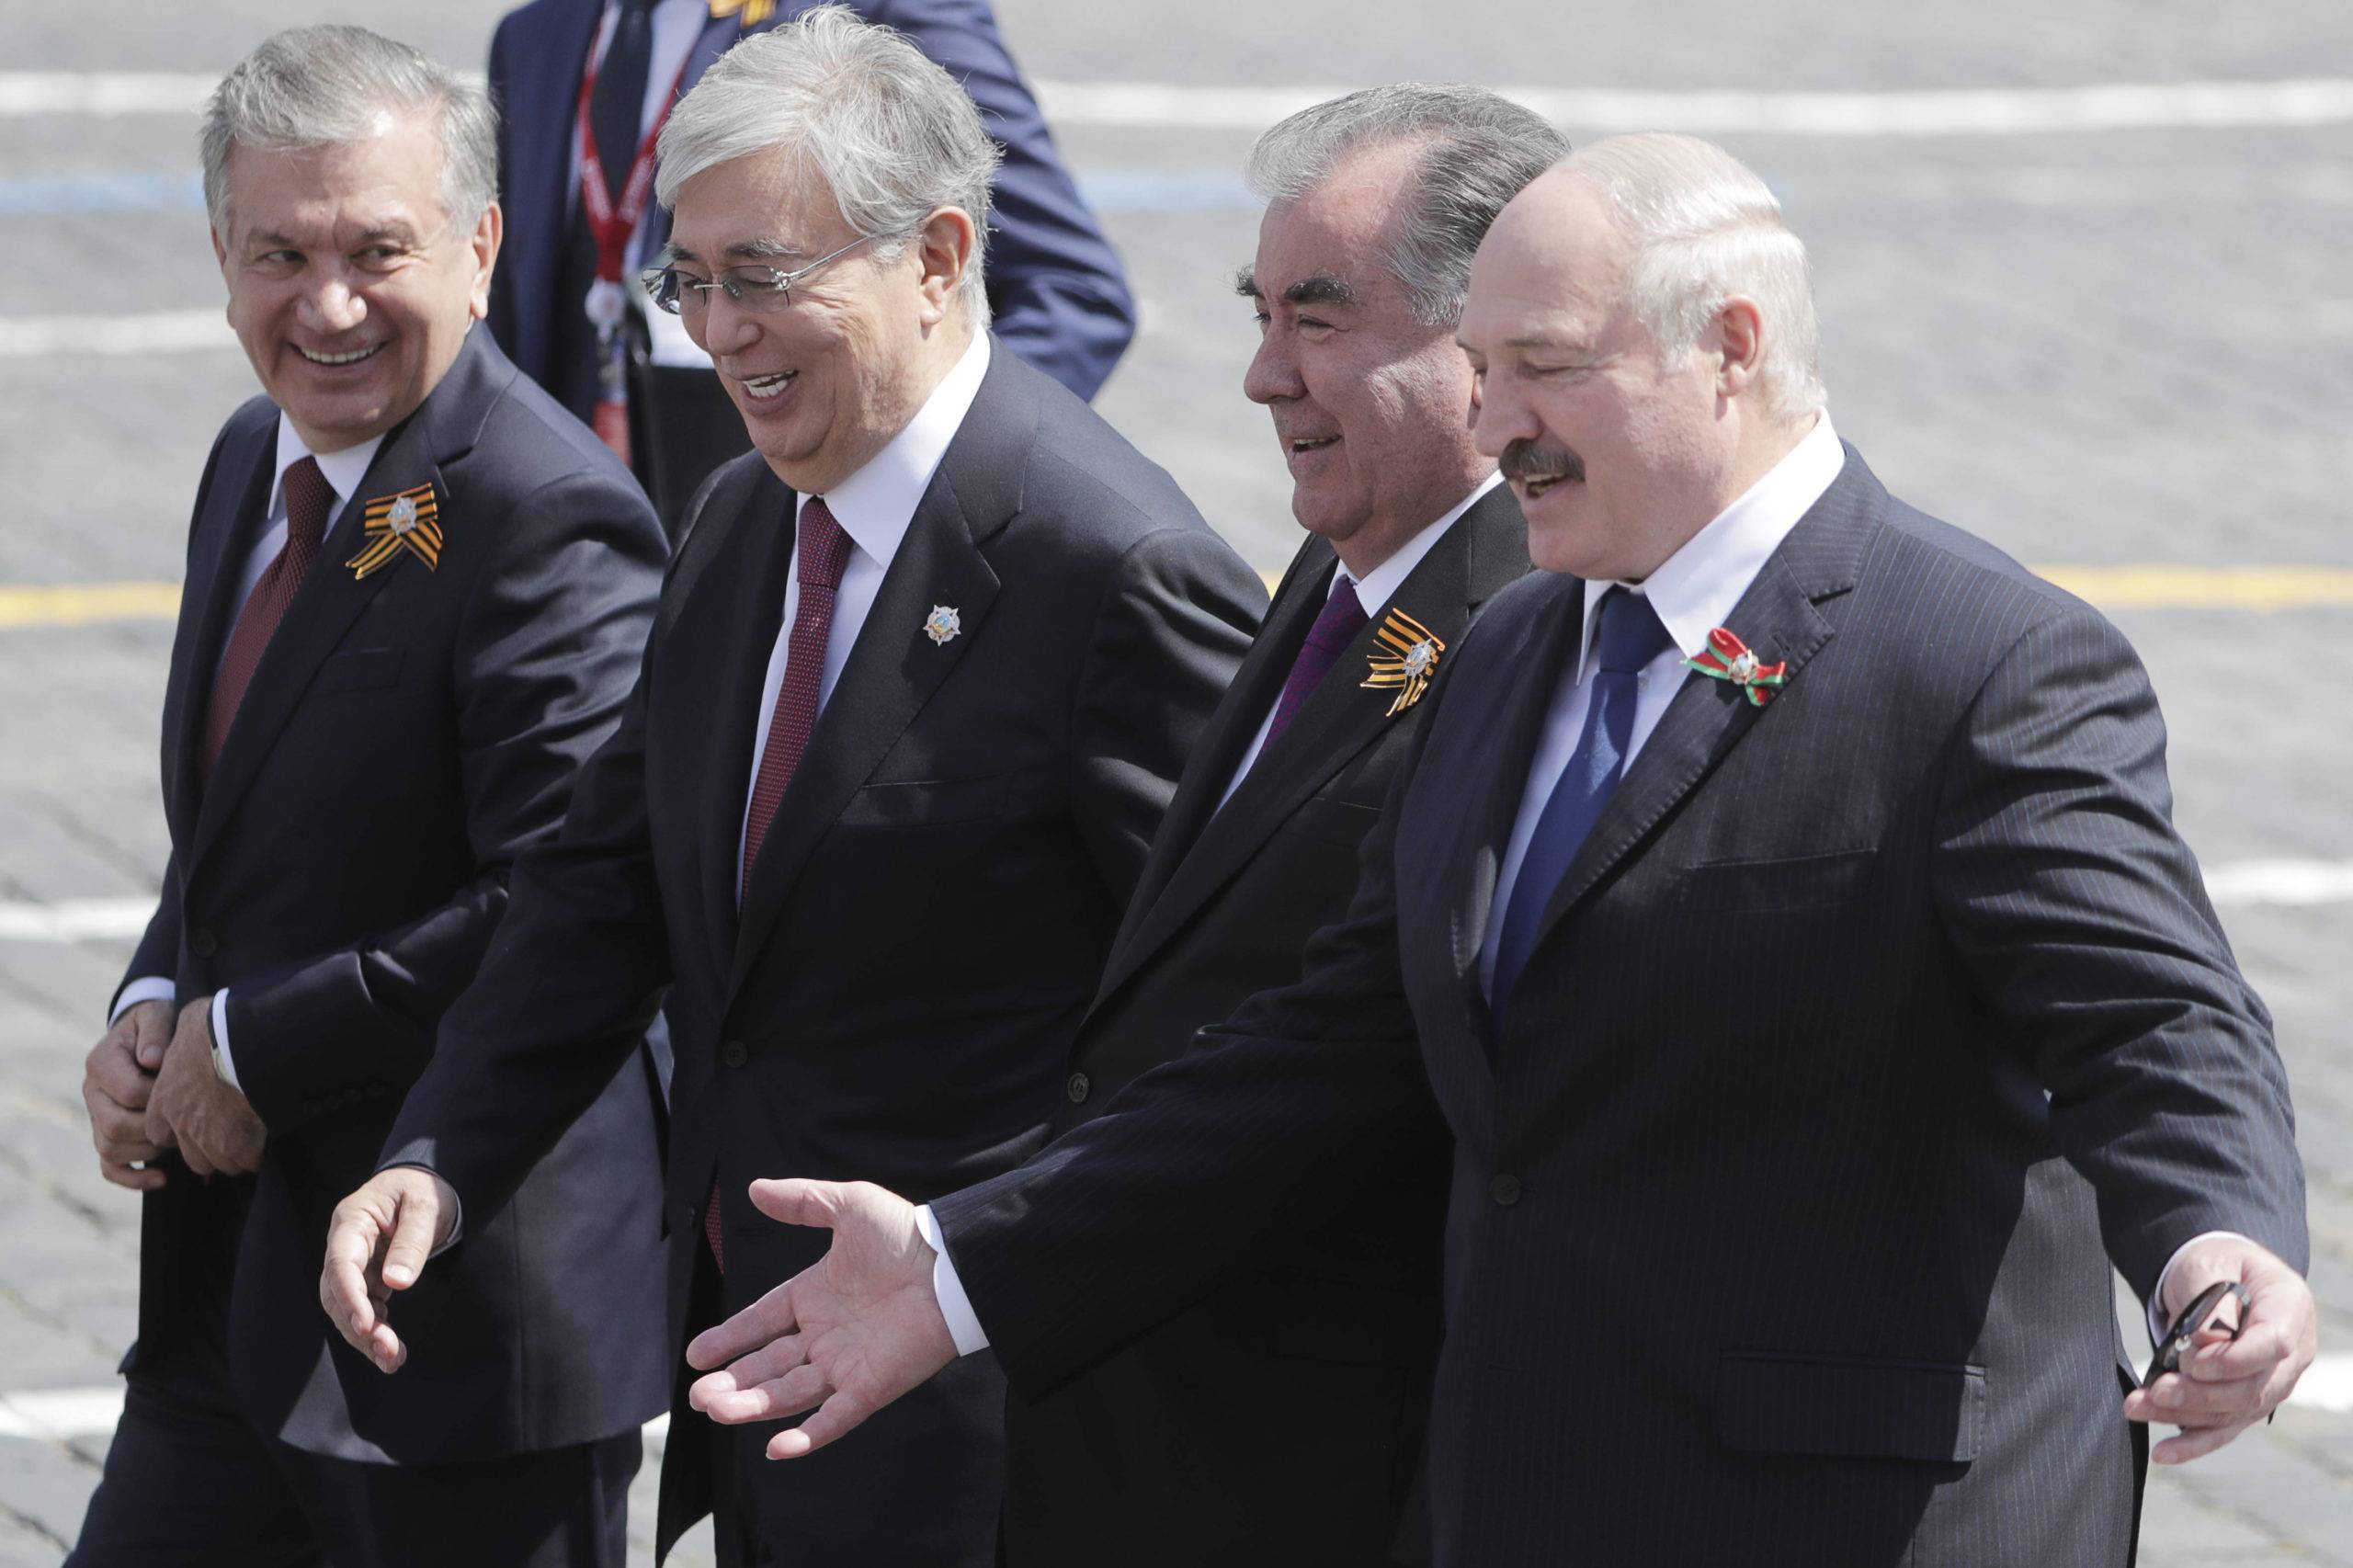 Le président de l'Ouzbékistan, Shavkat Mirziyoyev, le président du Kazakhstan, Kassym-Jomart Tokayev, le président du Tadjikistan, Emomali Rakhmon, et le président de la Biélorussie, Alexander Lukashenko (de gauche à droite), marchent sur la Place Rouge lors d'un défilé militaire du Jour de la Victoire marquant le 75e anniversaire de la victoire dans la Seconde Guerre mondiale (c) Sipa 20200624